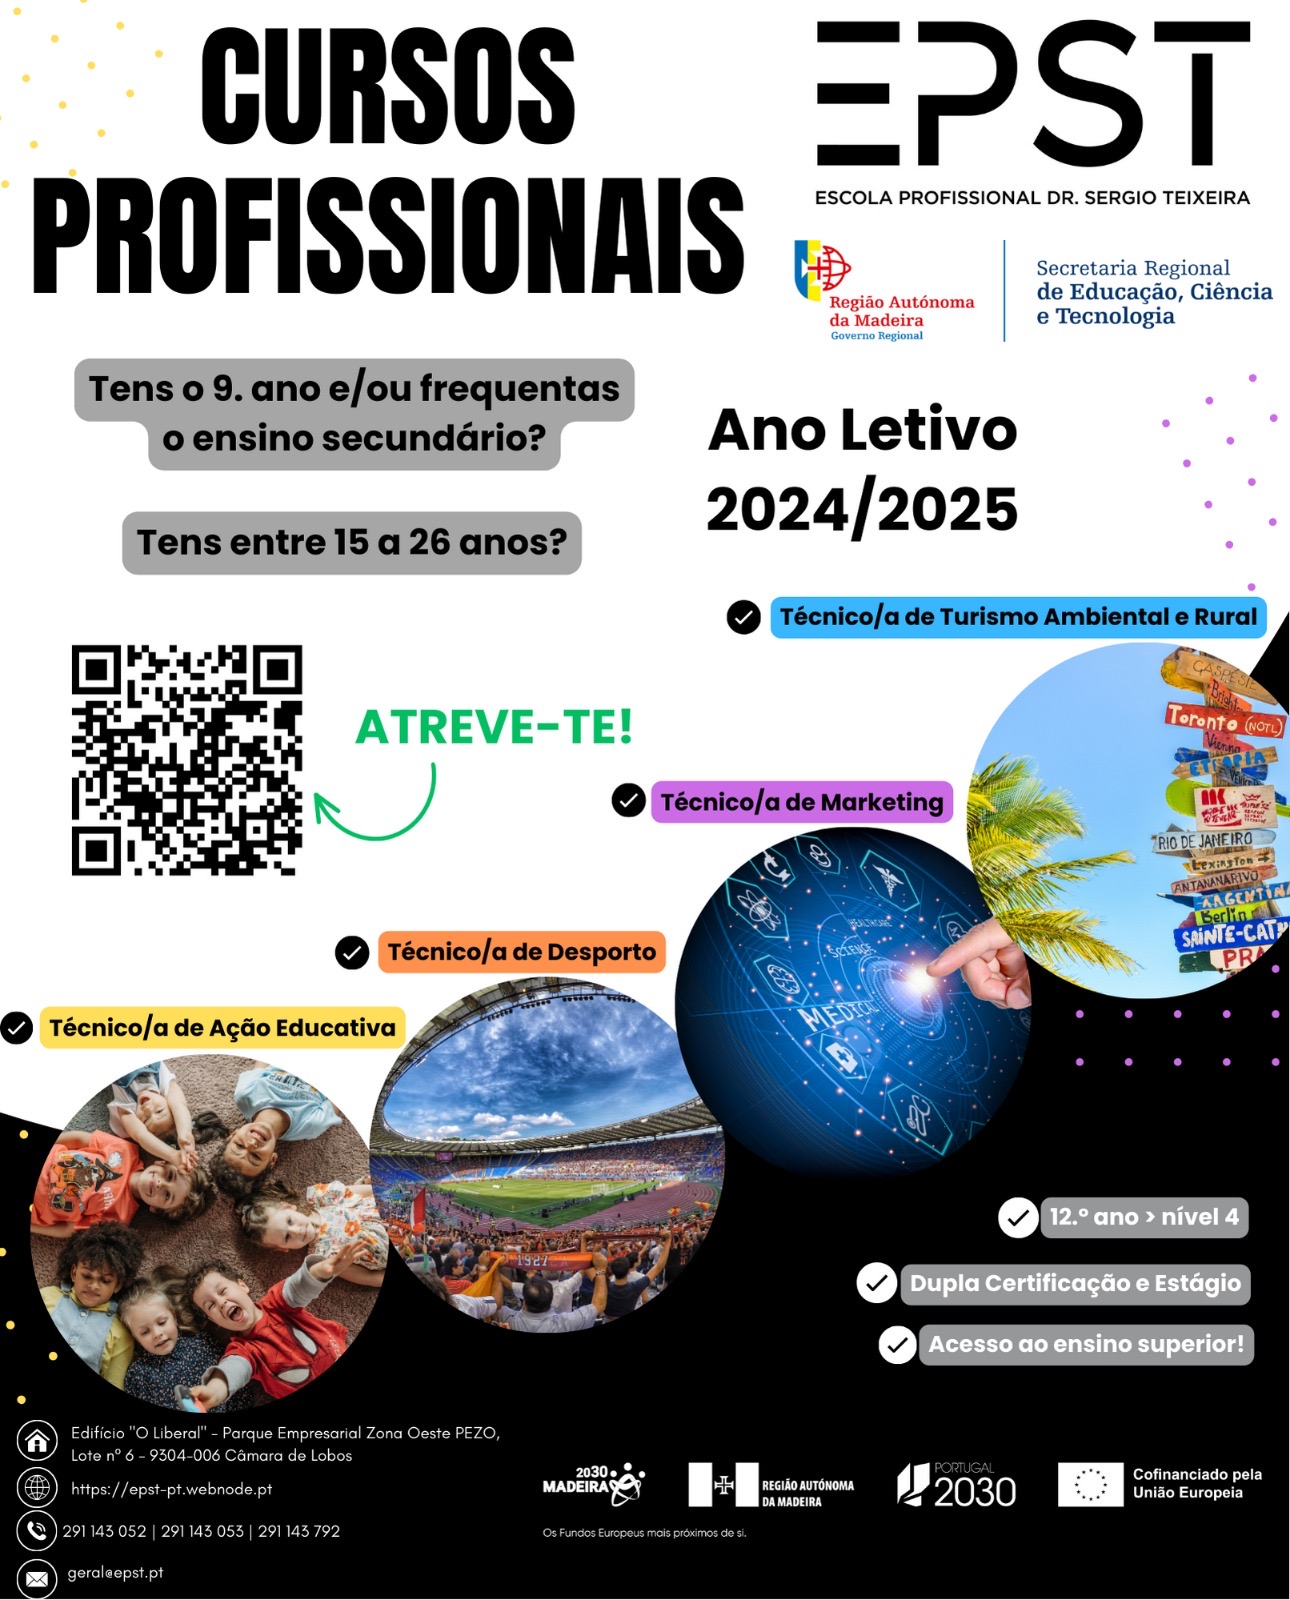 Estão abertas as pré-inscrições para o ano letivo 2024/2025 na Escola Profissional Dr. Sérgio Teixeira